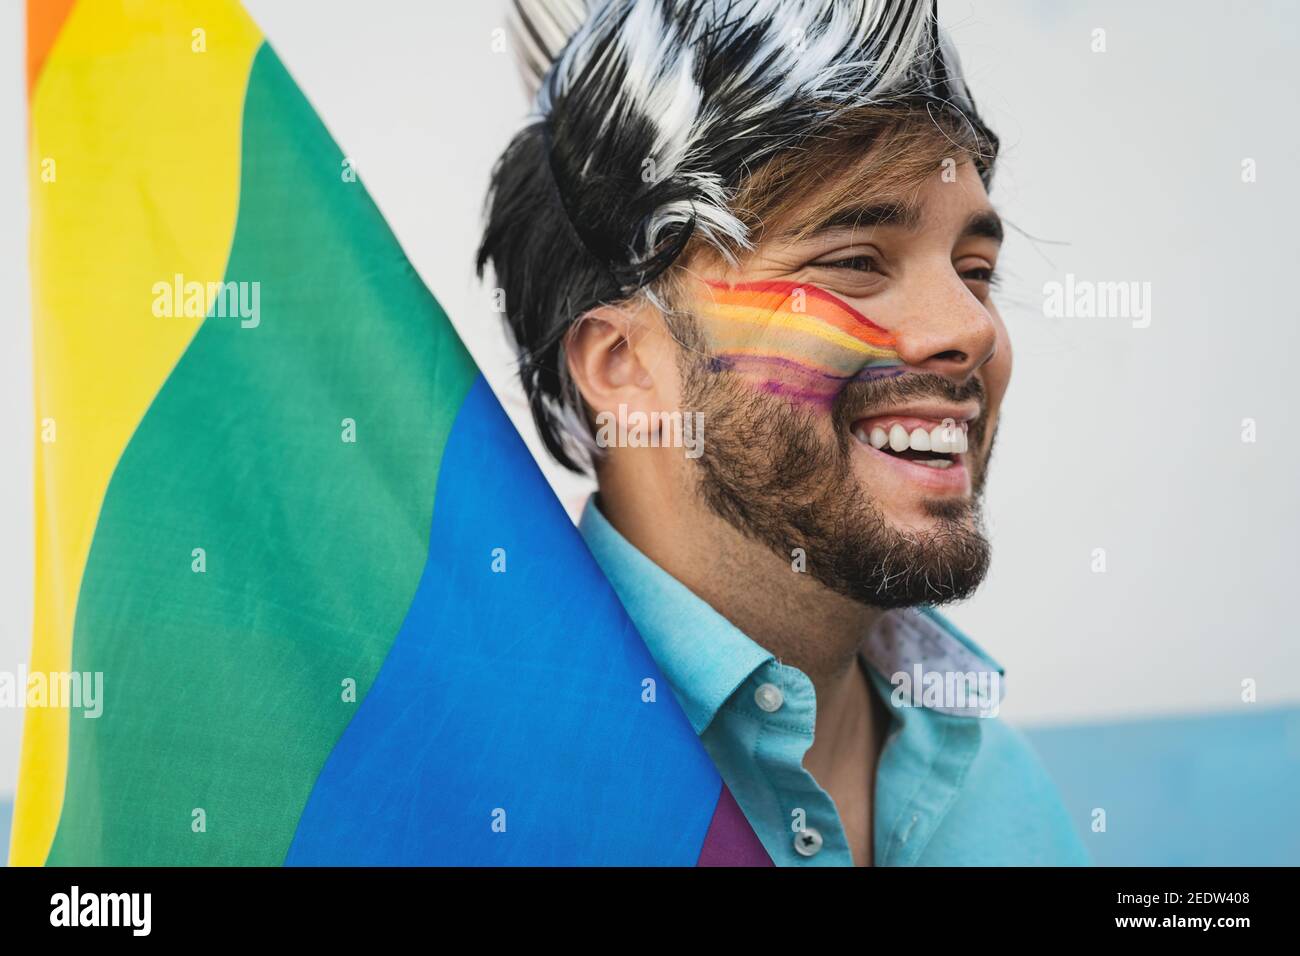 Heureux homosexuel homme ayant du plaisir célébrant la fête de la fierté gay Banque D'Images